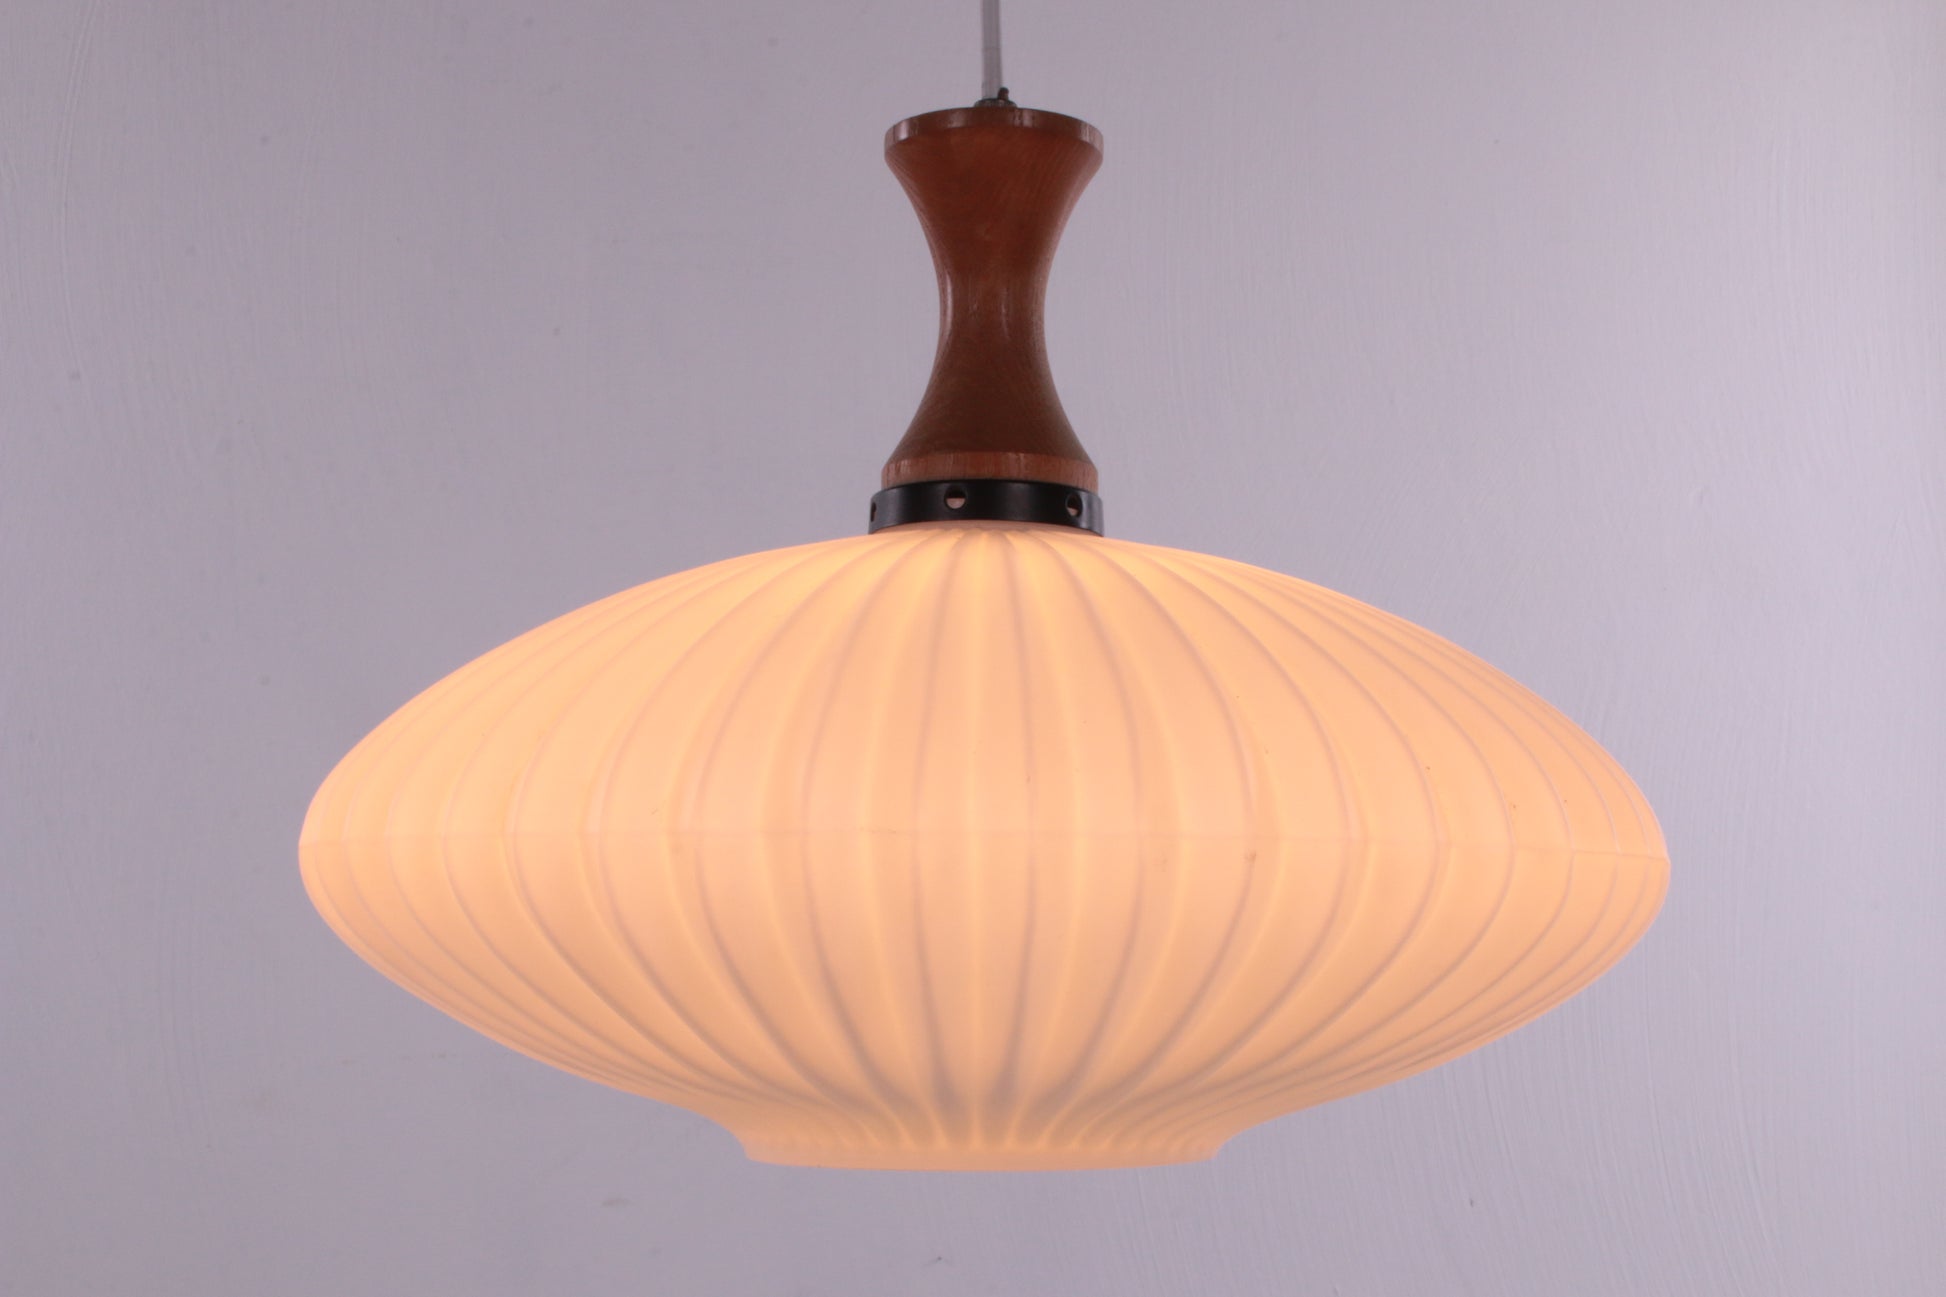 Vintage design hanglamp jaren60 van Massive voorkant licht aan